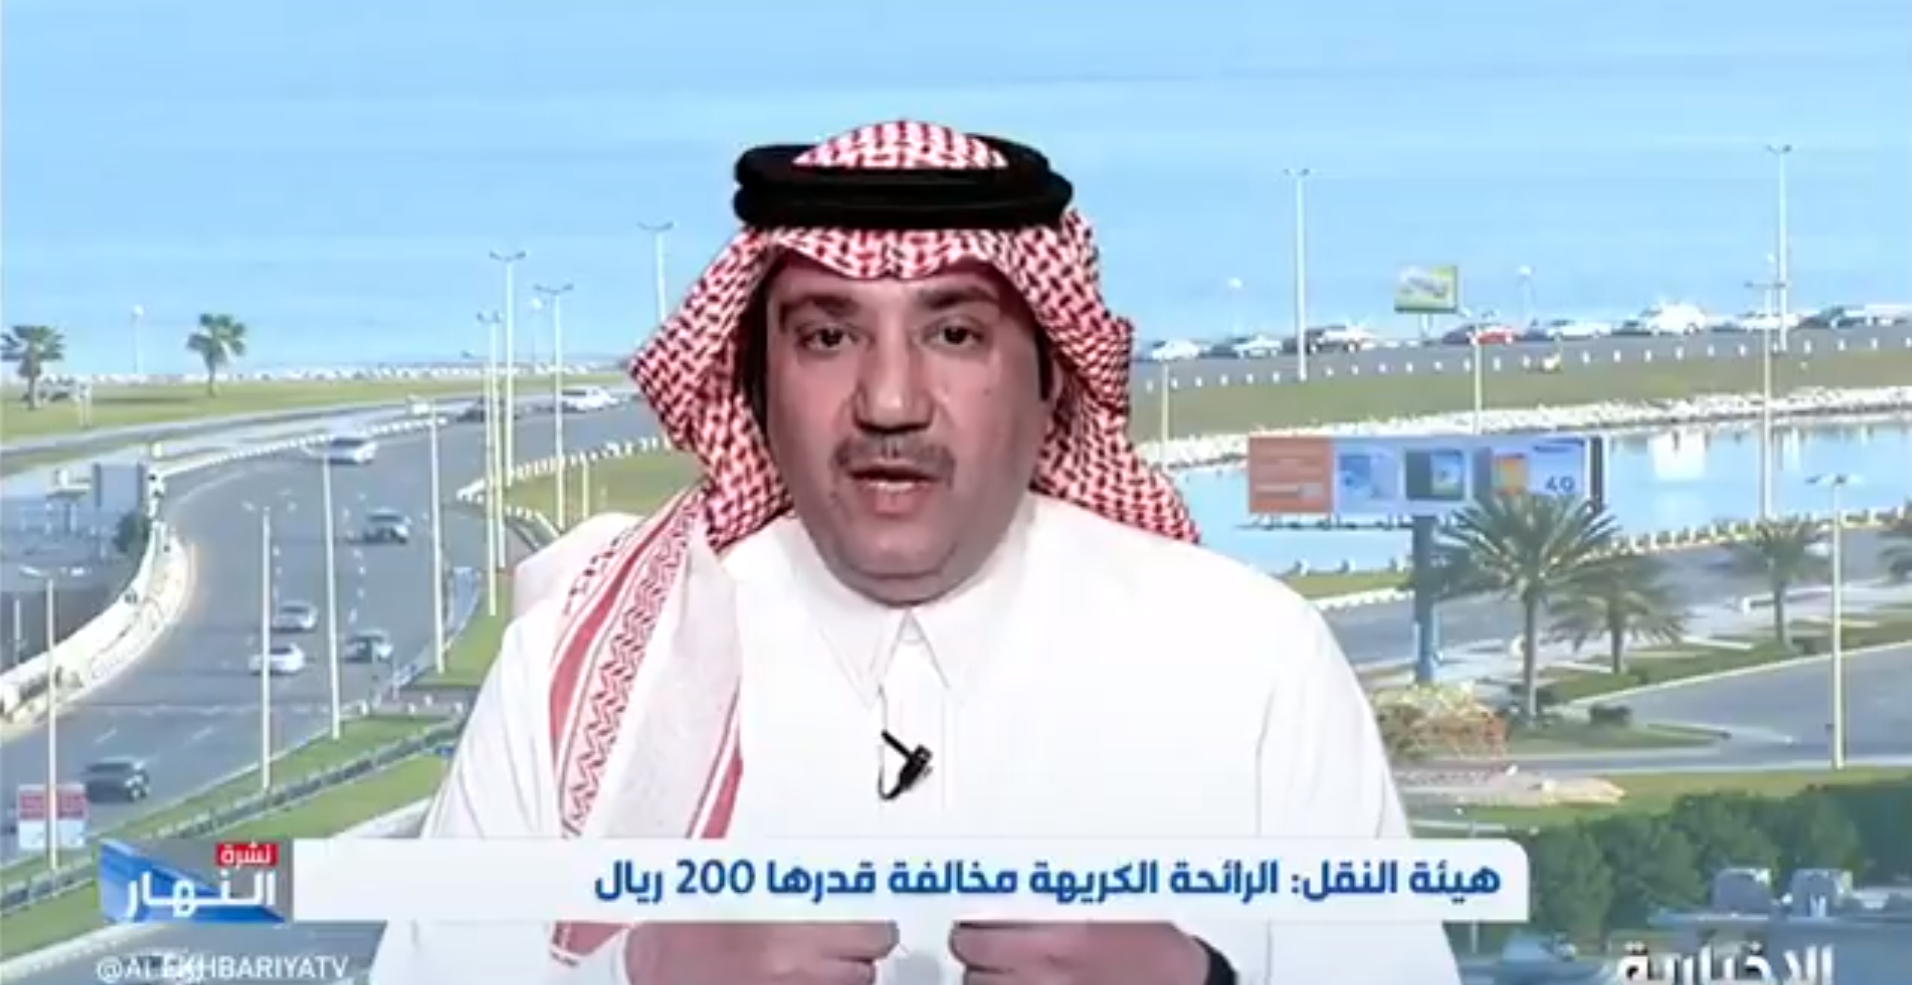 بدر الزياني يعتذر عن تصريحاته : لائحة الذوق العام واحدة للجميع